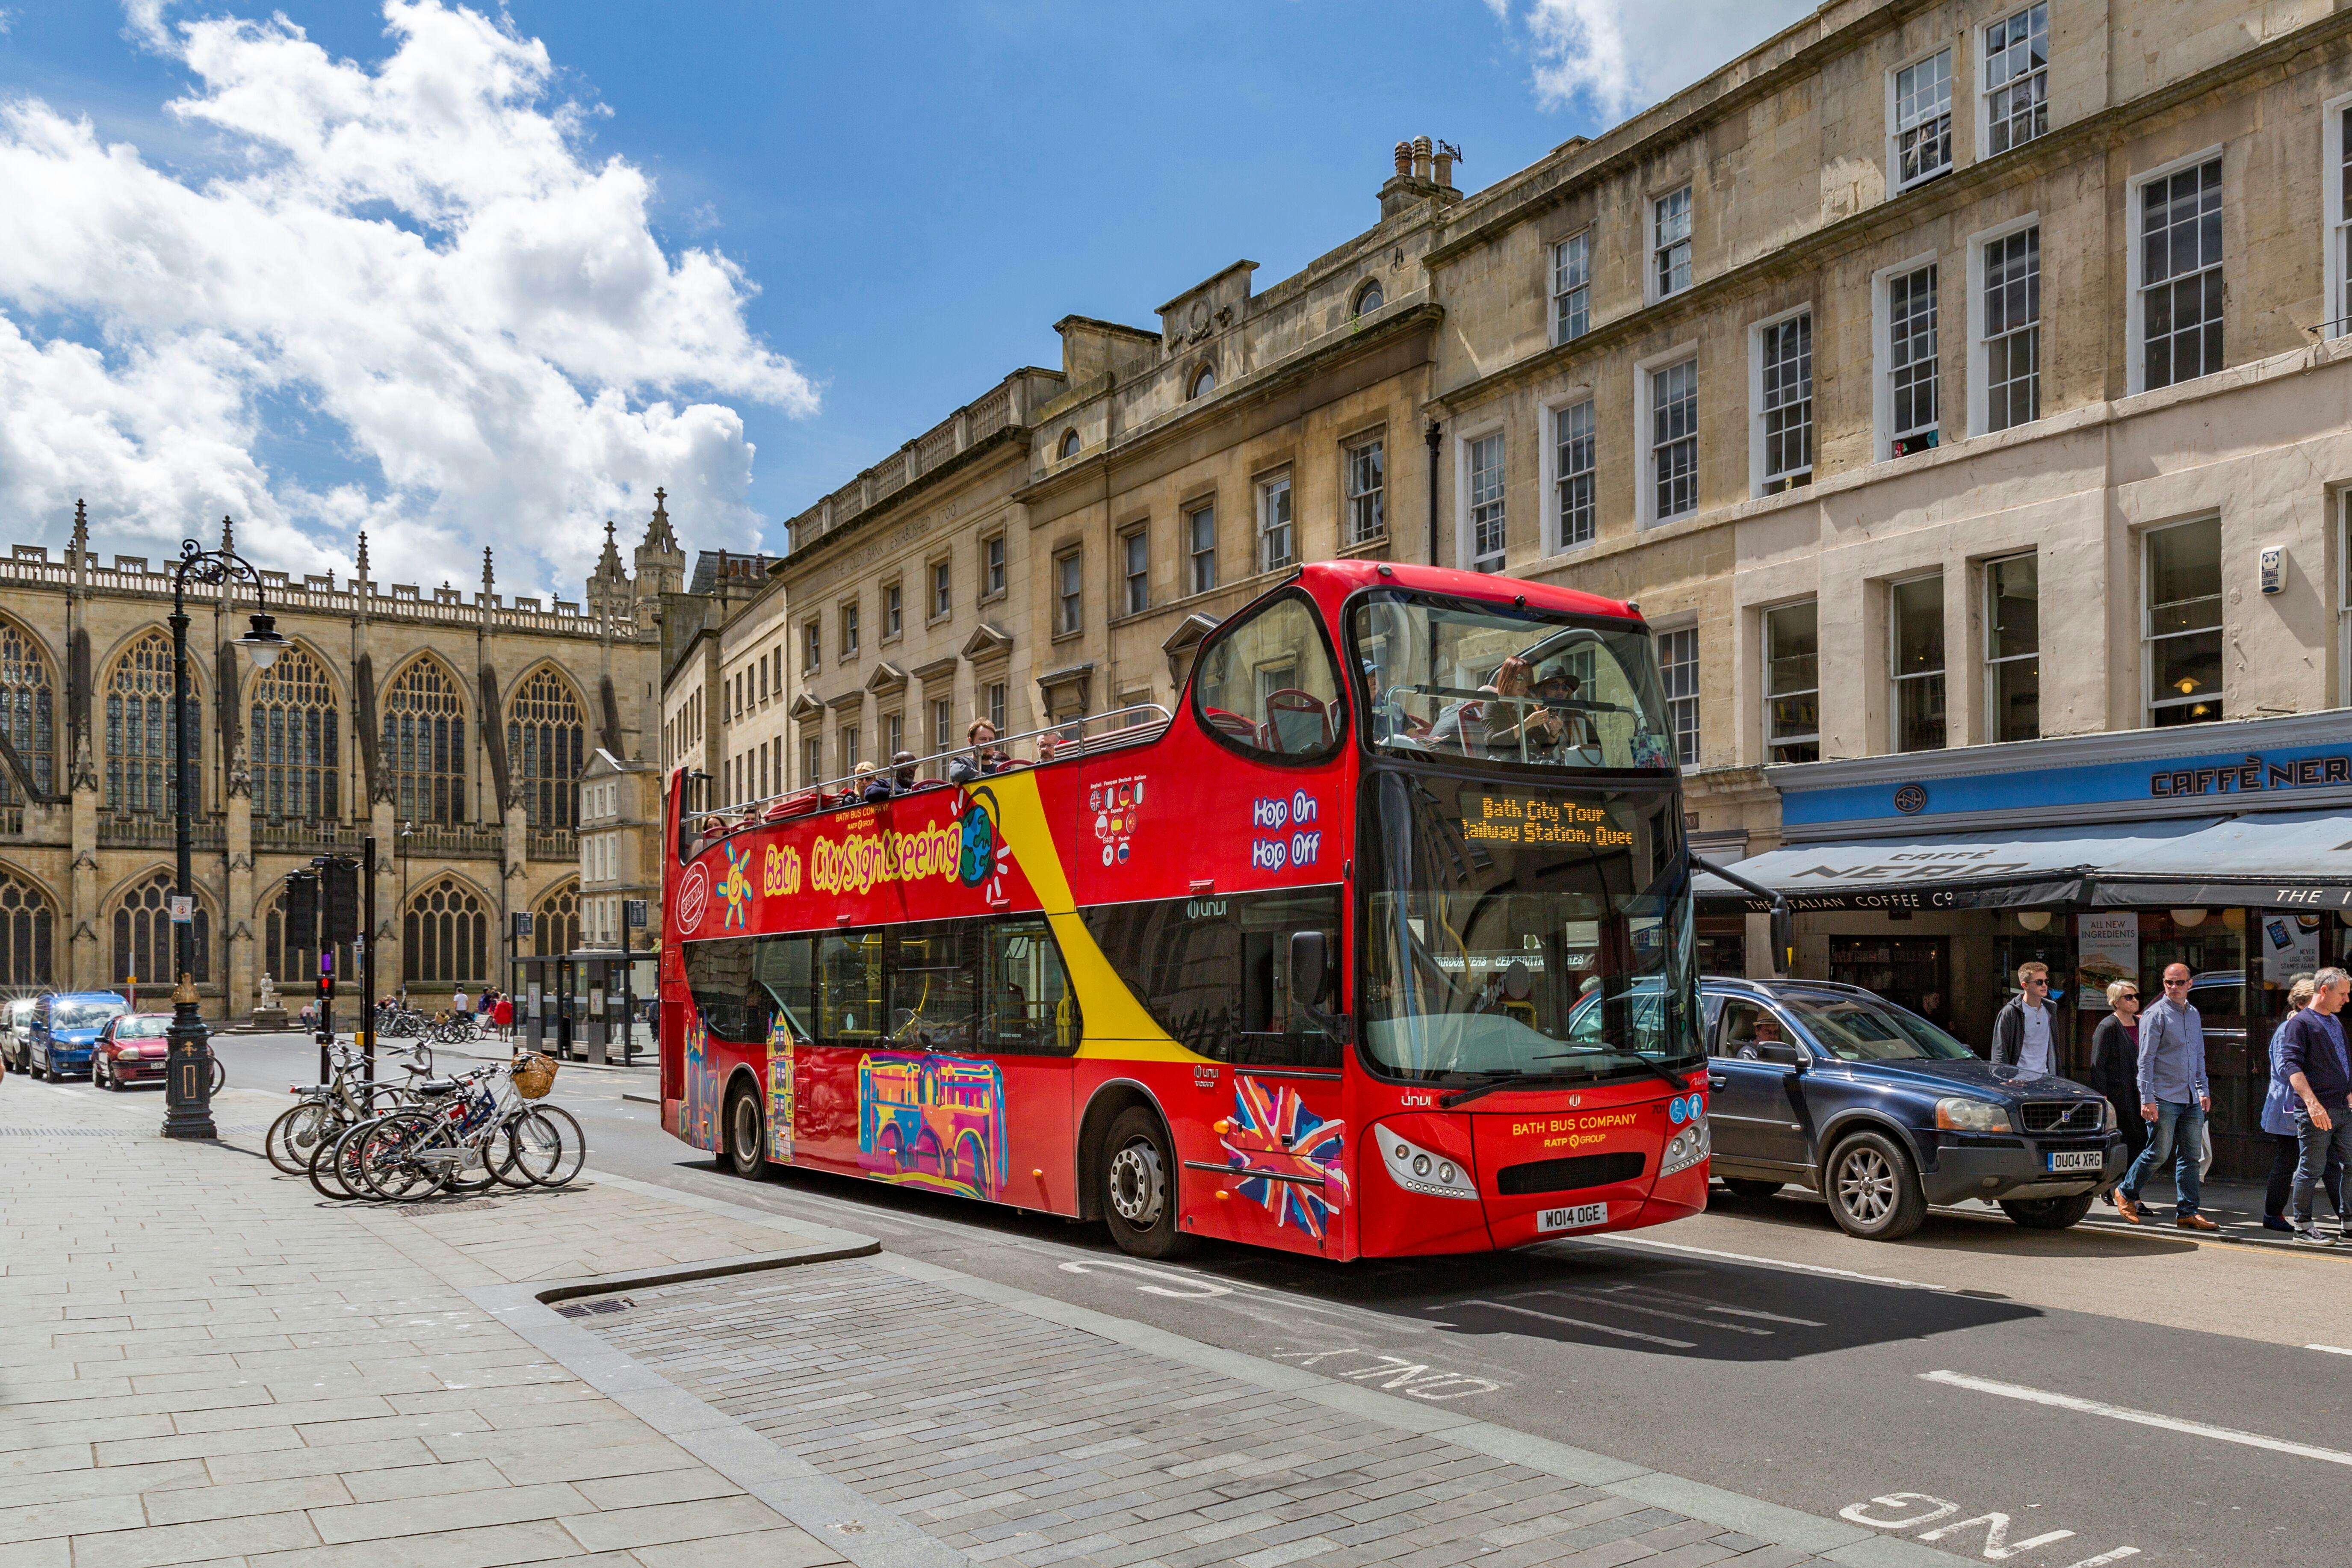 Excursão turística de 24 horas em ônibus panorâmico pela cidade de Bath